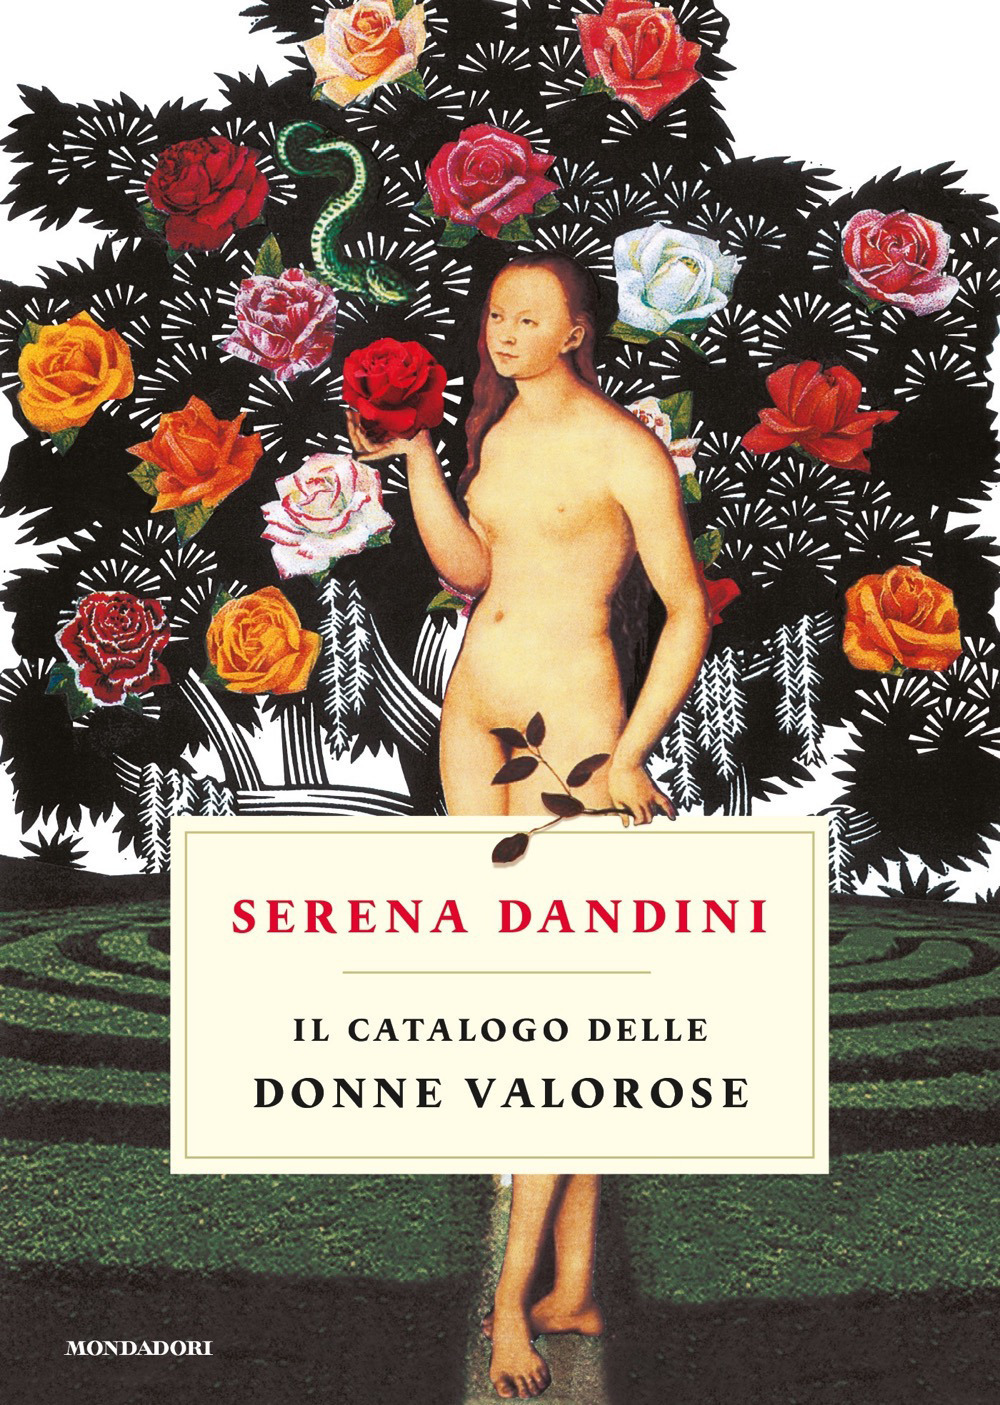 Serena Dandini Il catalogo delle donne valorose